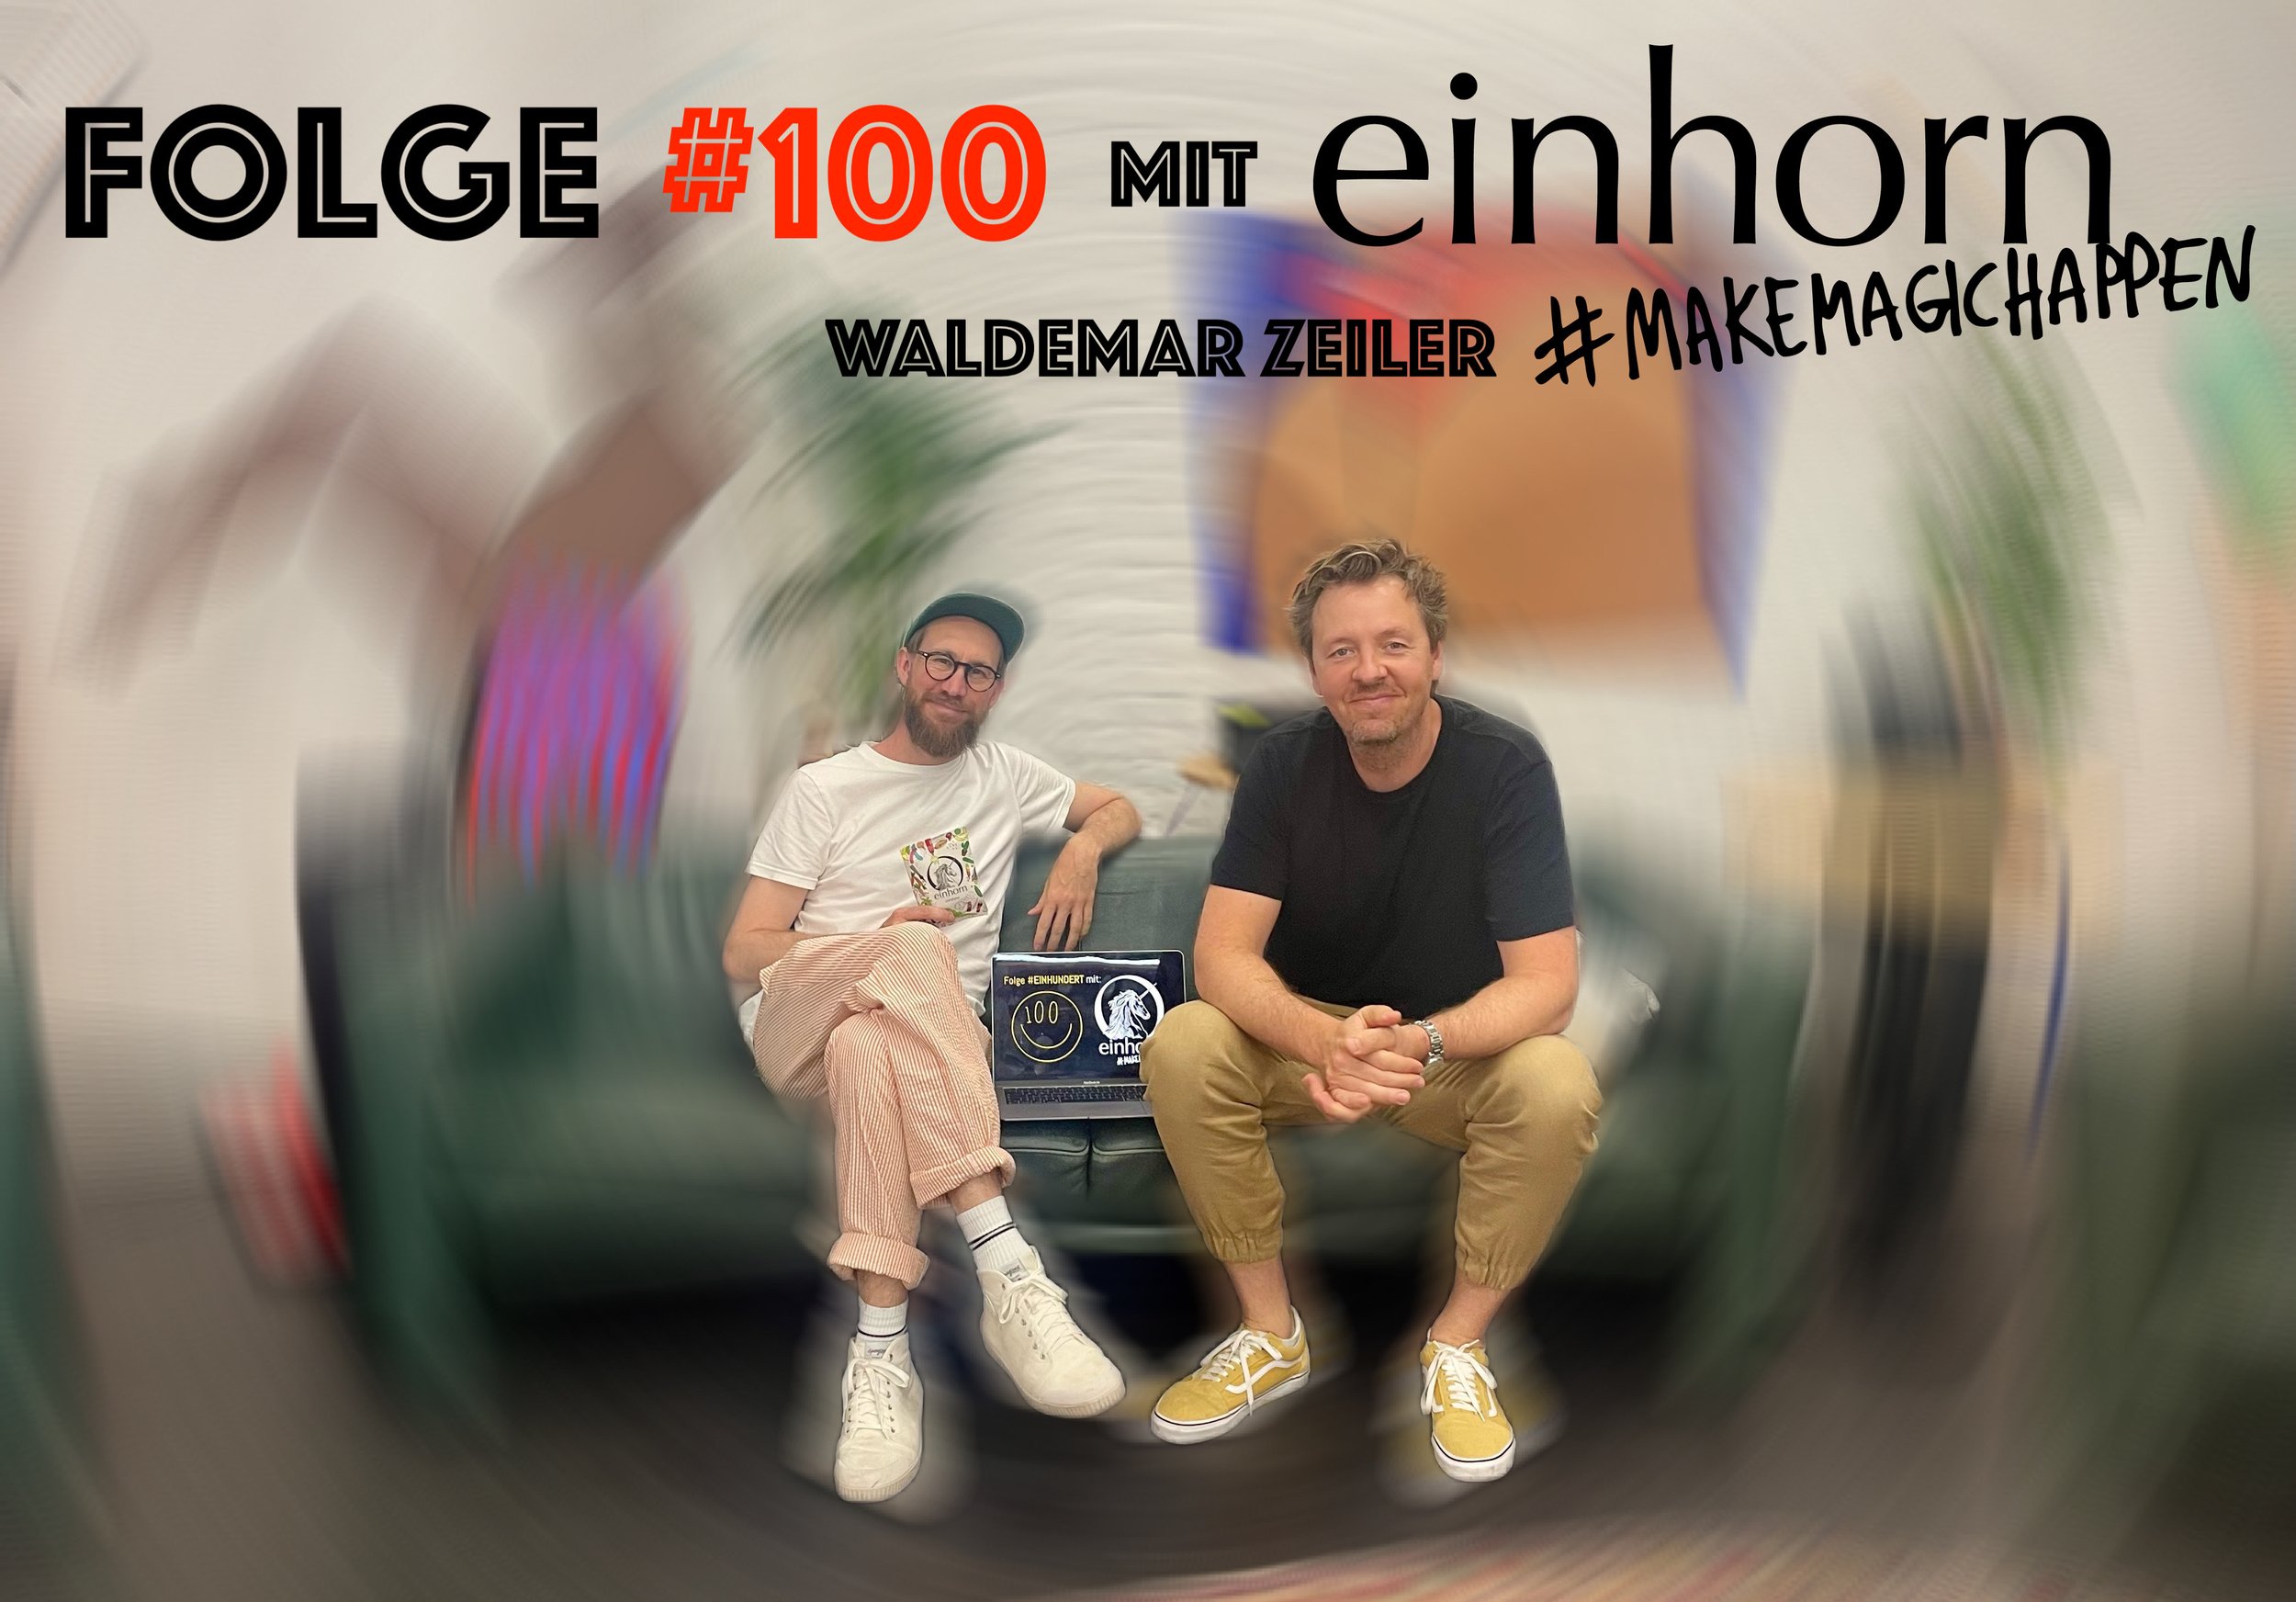 Folge #100 mit Waldemar Zeiler von einhorn